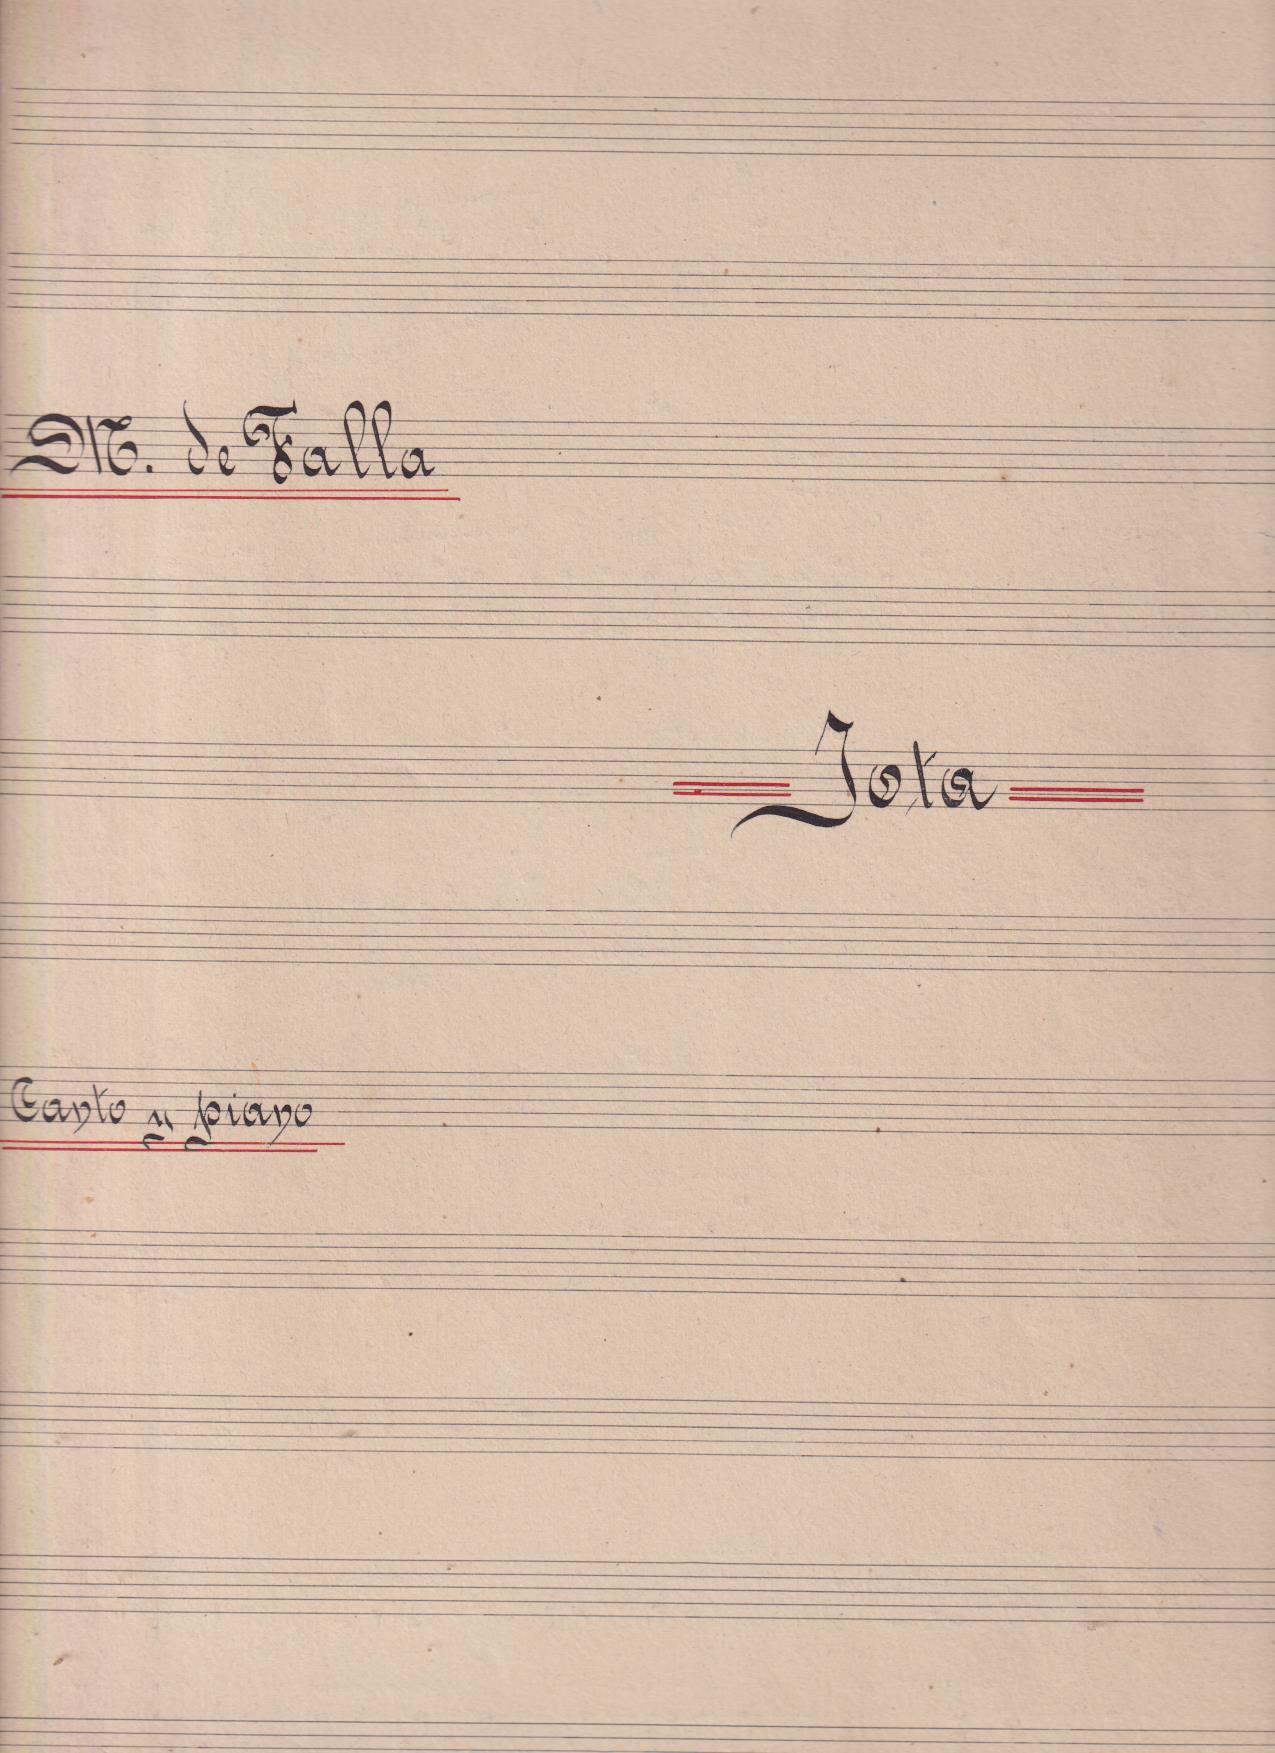 Manuel de Falla. Jota, Canto y piano. Partitura manuscrita (7 páginas) 36x26